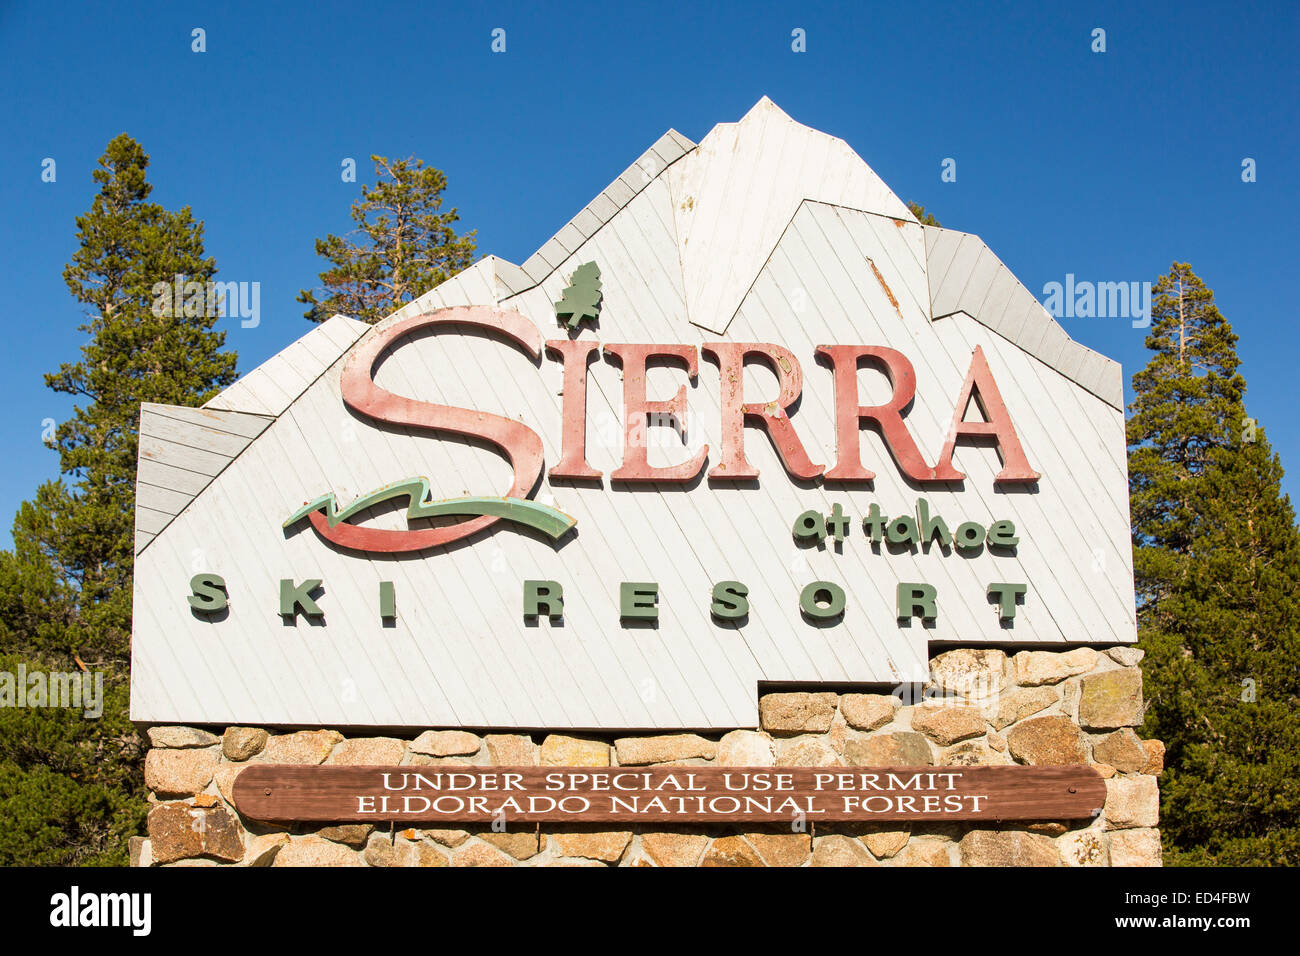 Les montagnes de la Sierra Nevada dans la forêt nationale d'El Dorado, California, USA. Le changement climatique a conduit à une réduction drastique de l'enneigement, ce qui a aidé à conduire le long de quatre ans de sécheresse. Il a également des répercussions sur l'industrie du ski. Banque D'Images